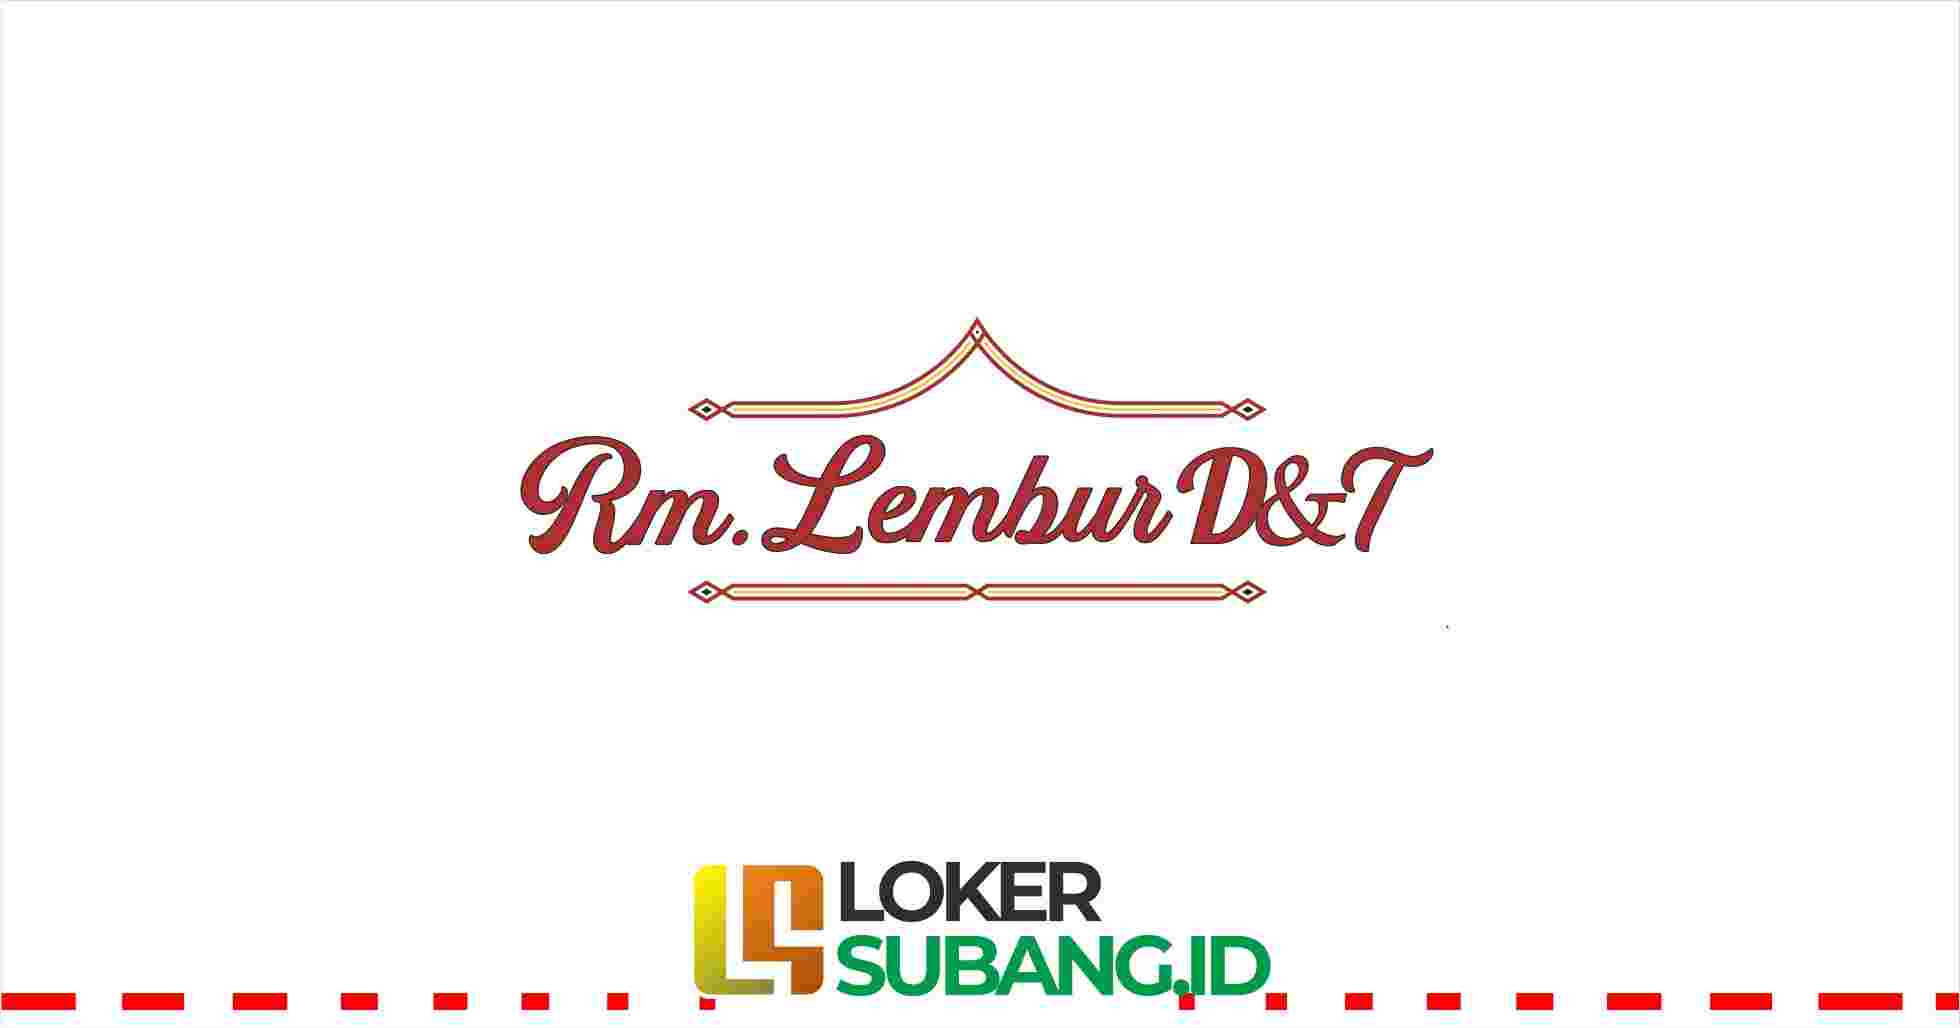 RM Lembur D&T Subang